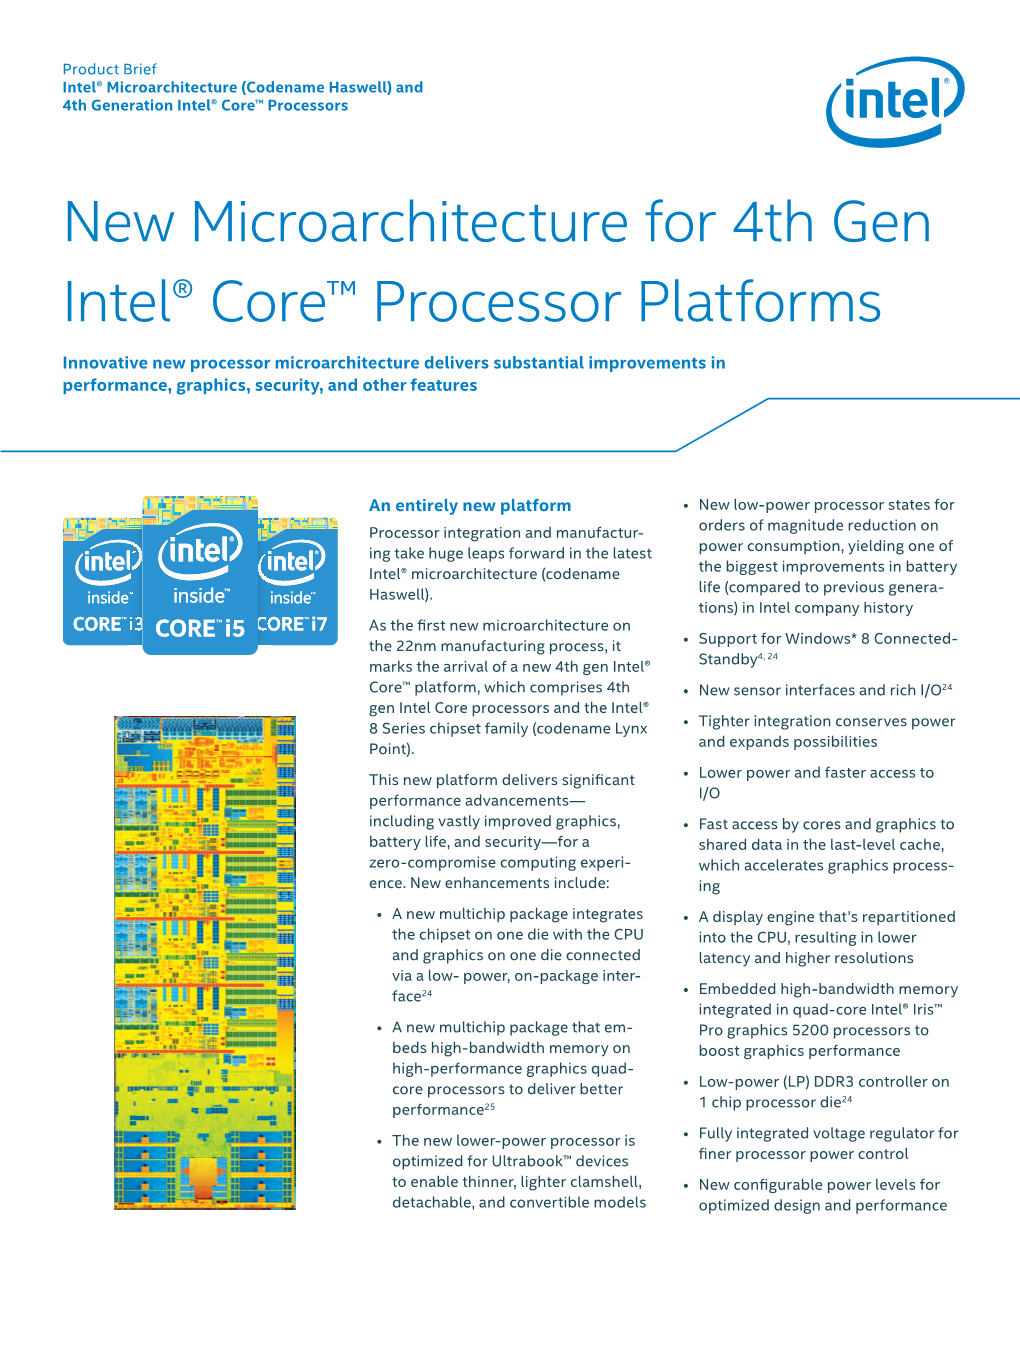 New Microarchitecture for 4Th Gen Intel® Core™ Processor Platforms